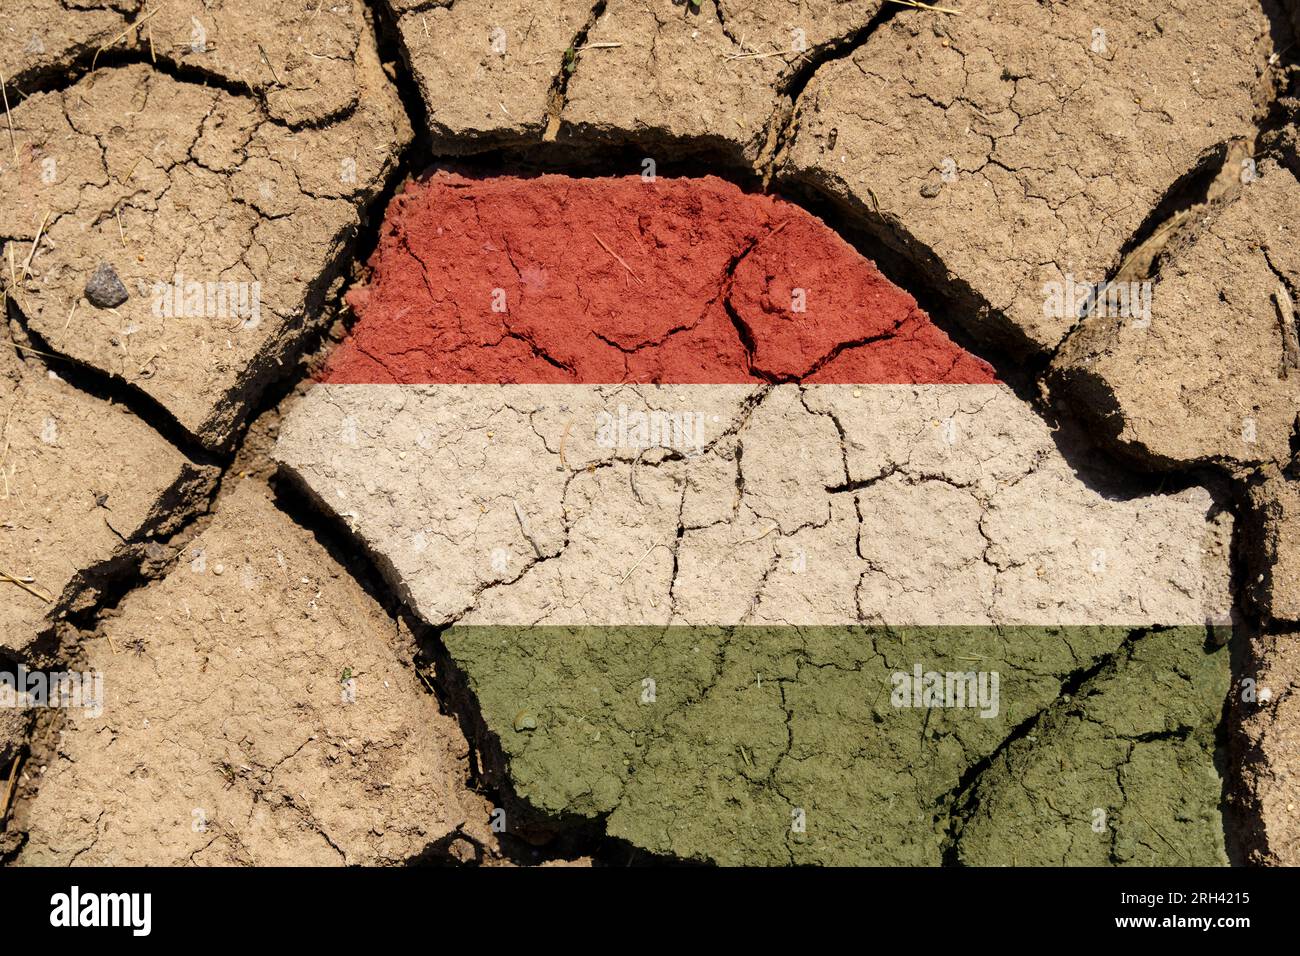 Ökologisches Konzept. Dürre. Auf trockenem, gerissenem Boden das Bild der ungarischen Flagge. Stockfoto